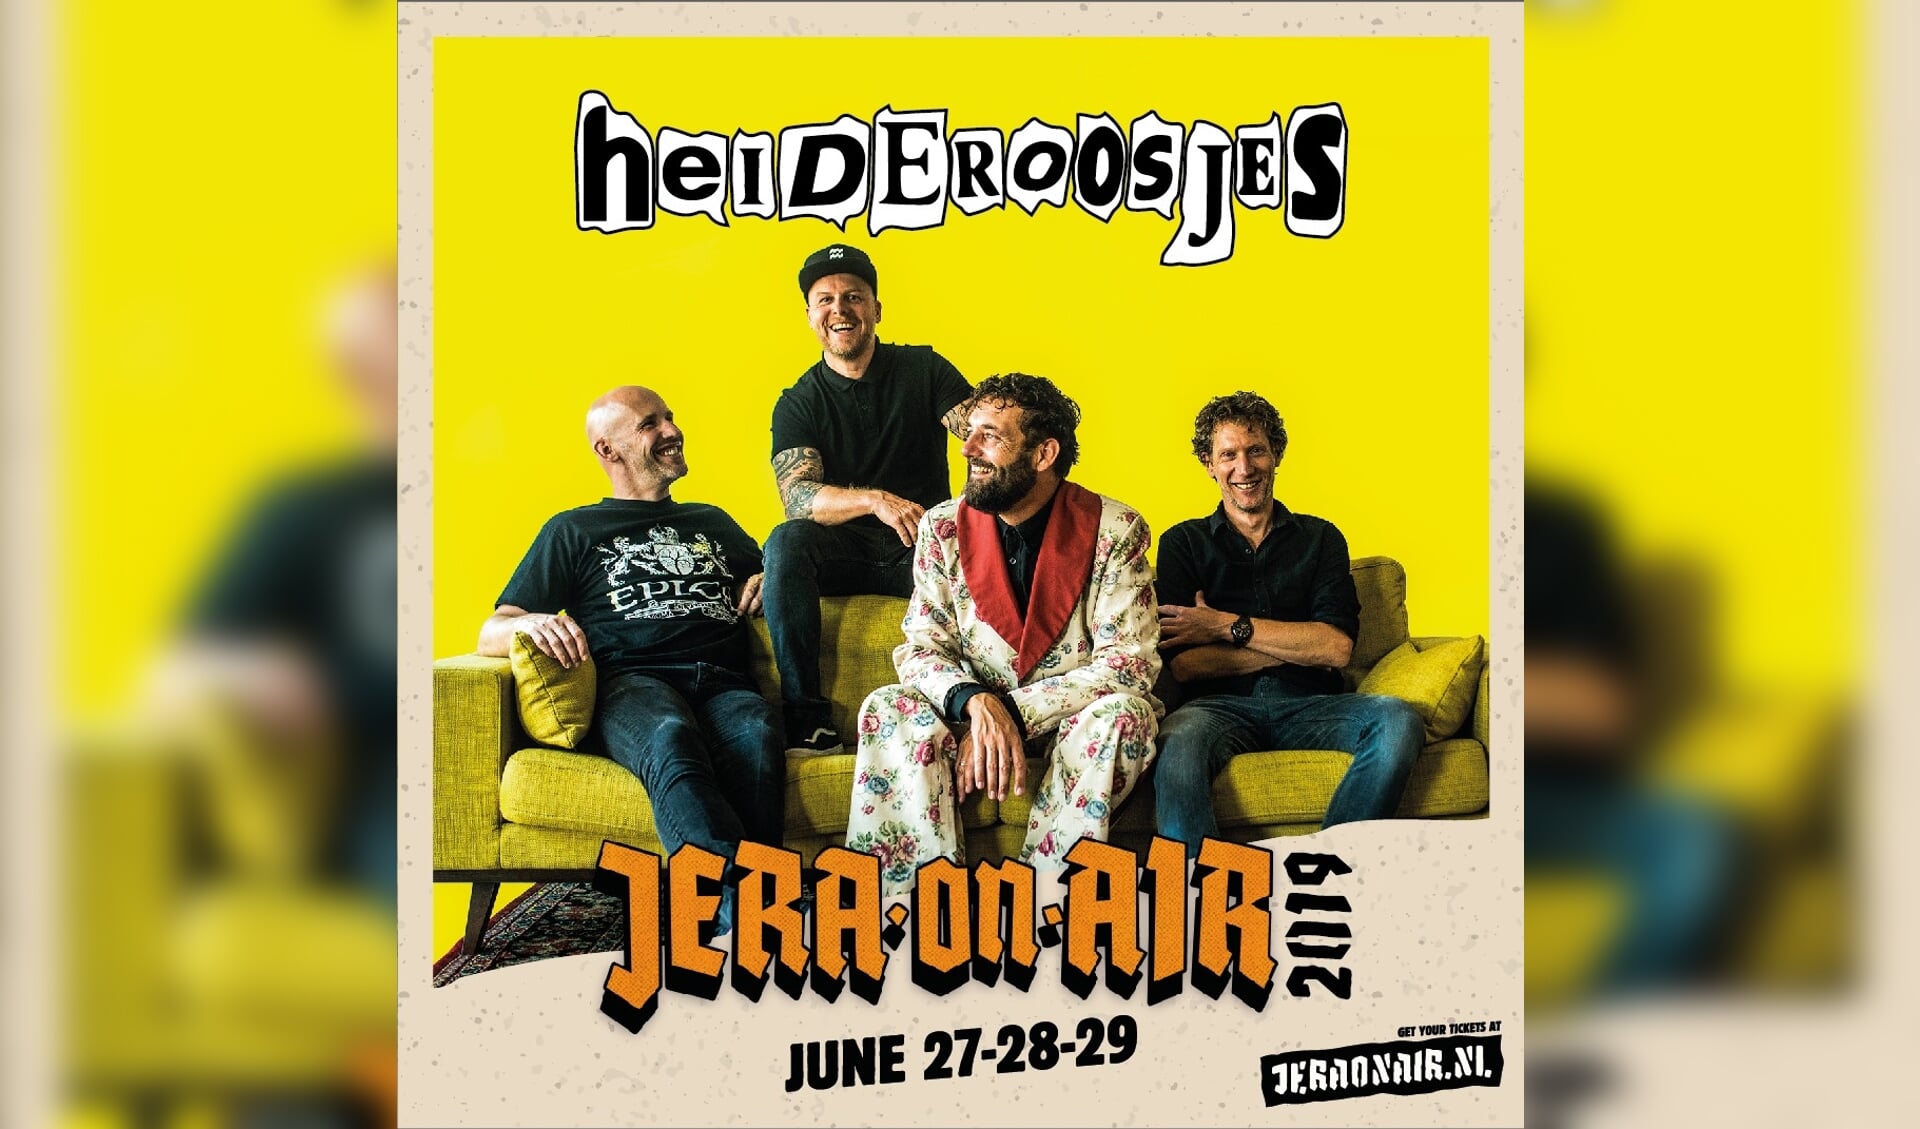 Heideroosjes treedt op zaterdag 29 juni 2019 op tijdens  Jera On Air in Ysselsteyn. 